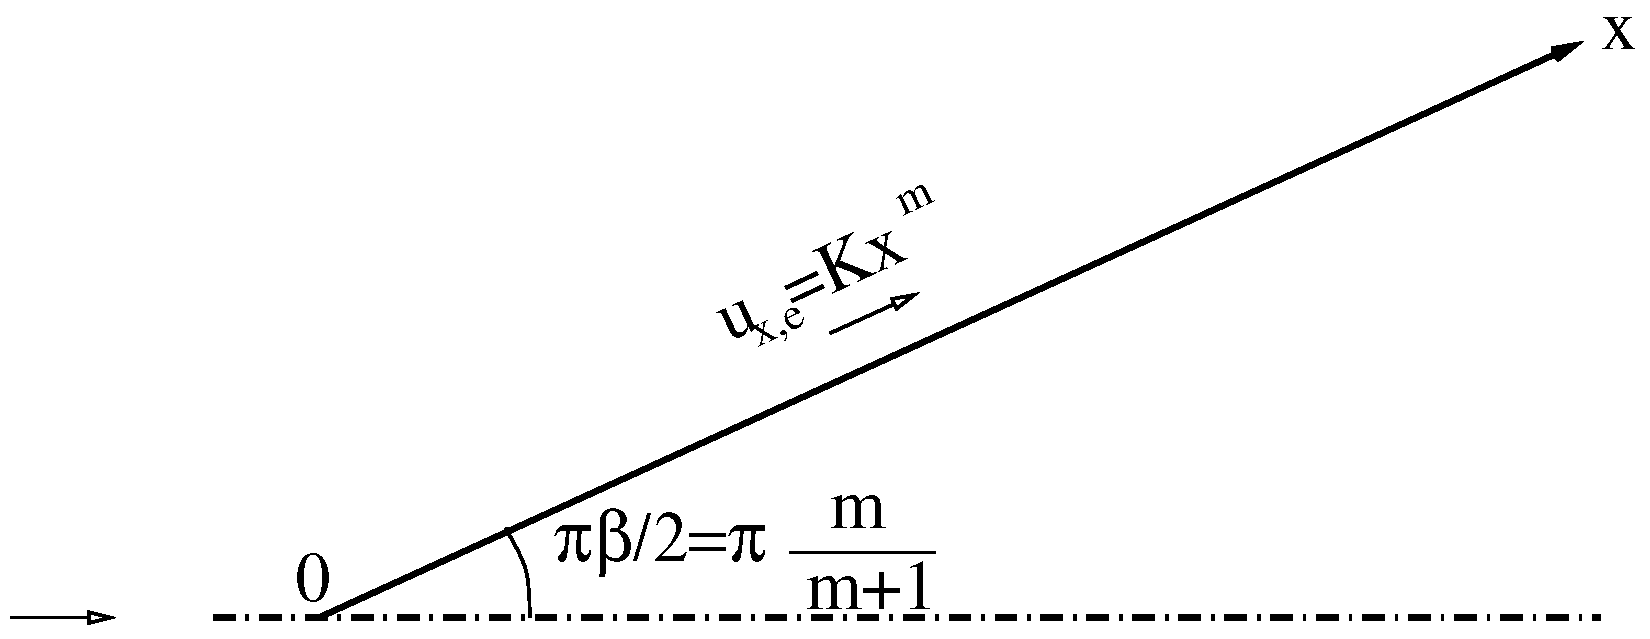 Euler Equations, Glenn Research Center